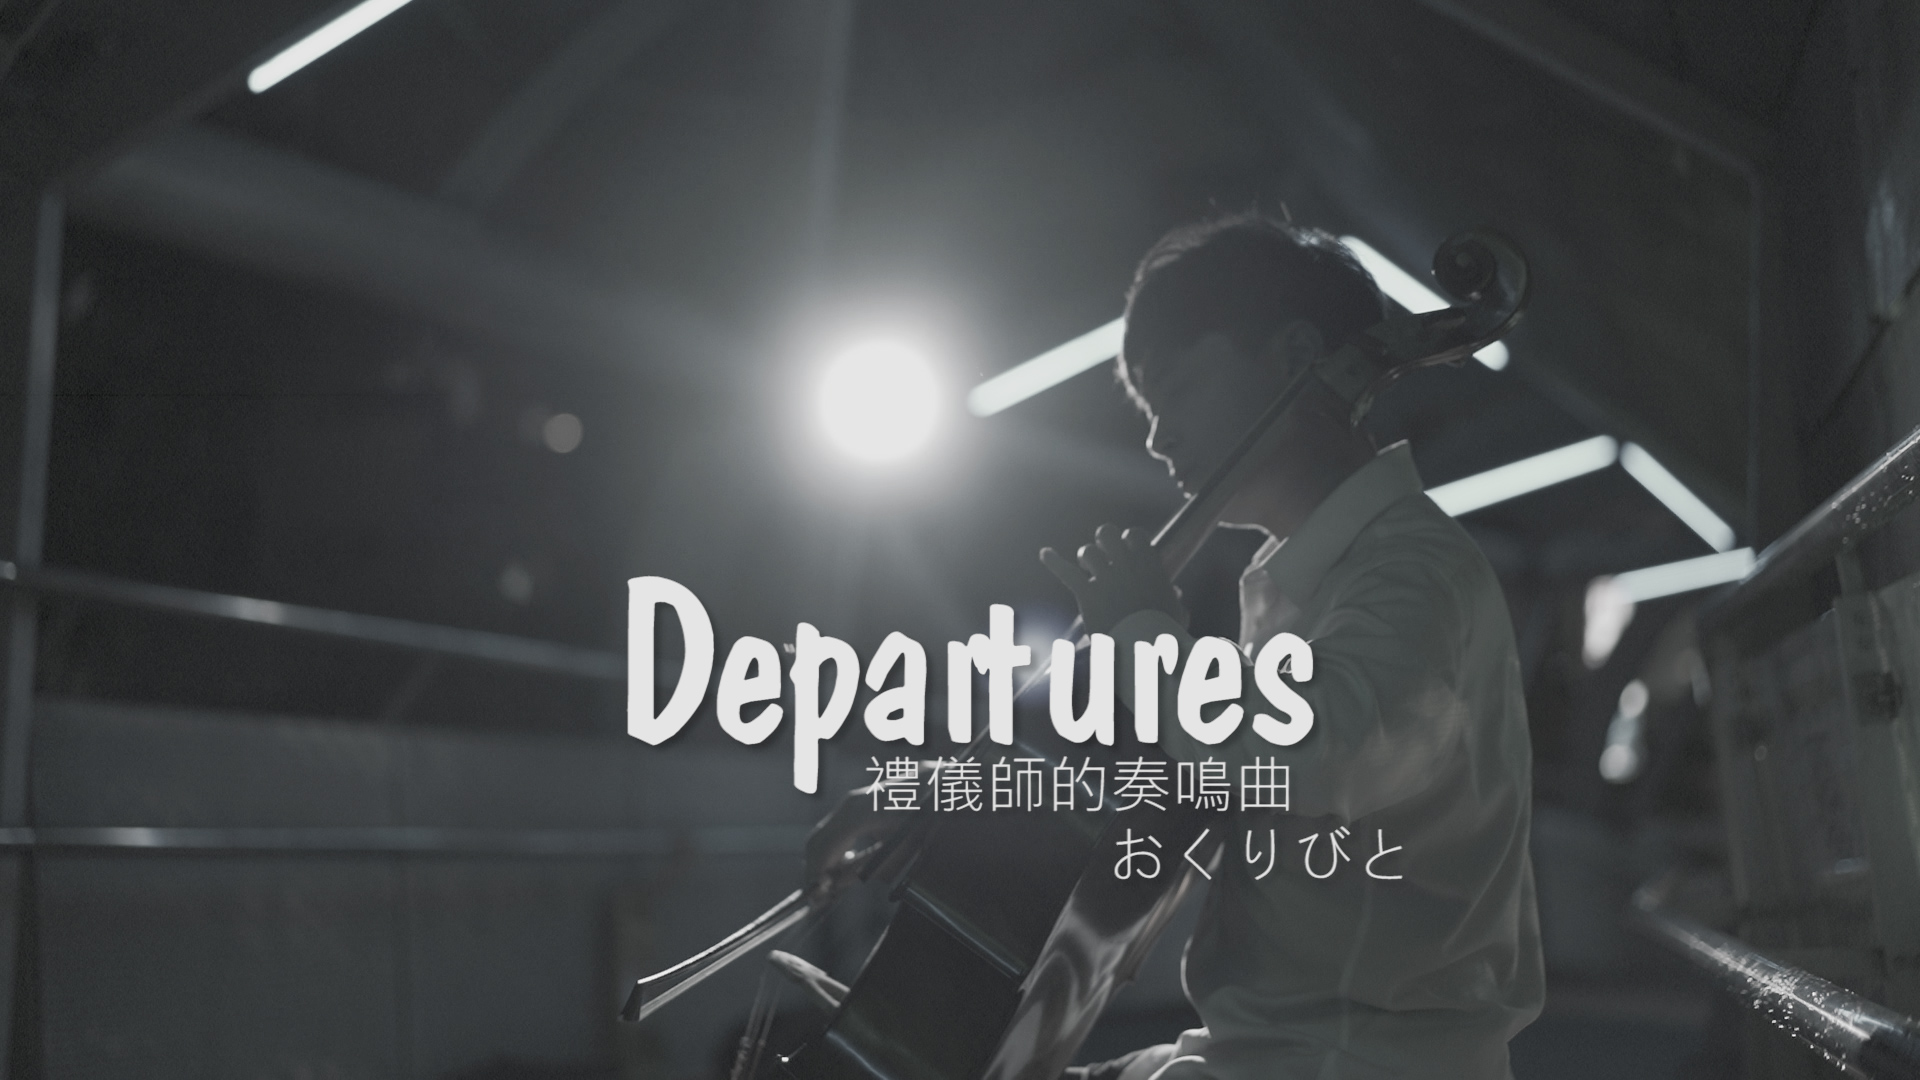 おくりびと《Memory》from “Departures”  by 久石讓 《送行者-禮儀師的樂章》『cover by YoYo Cello』